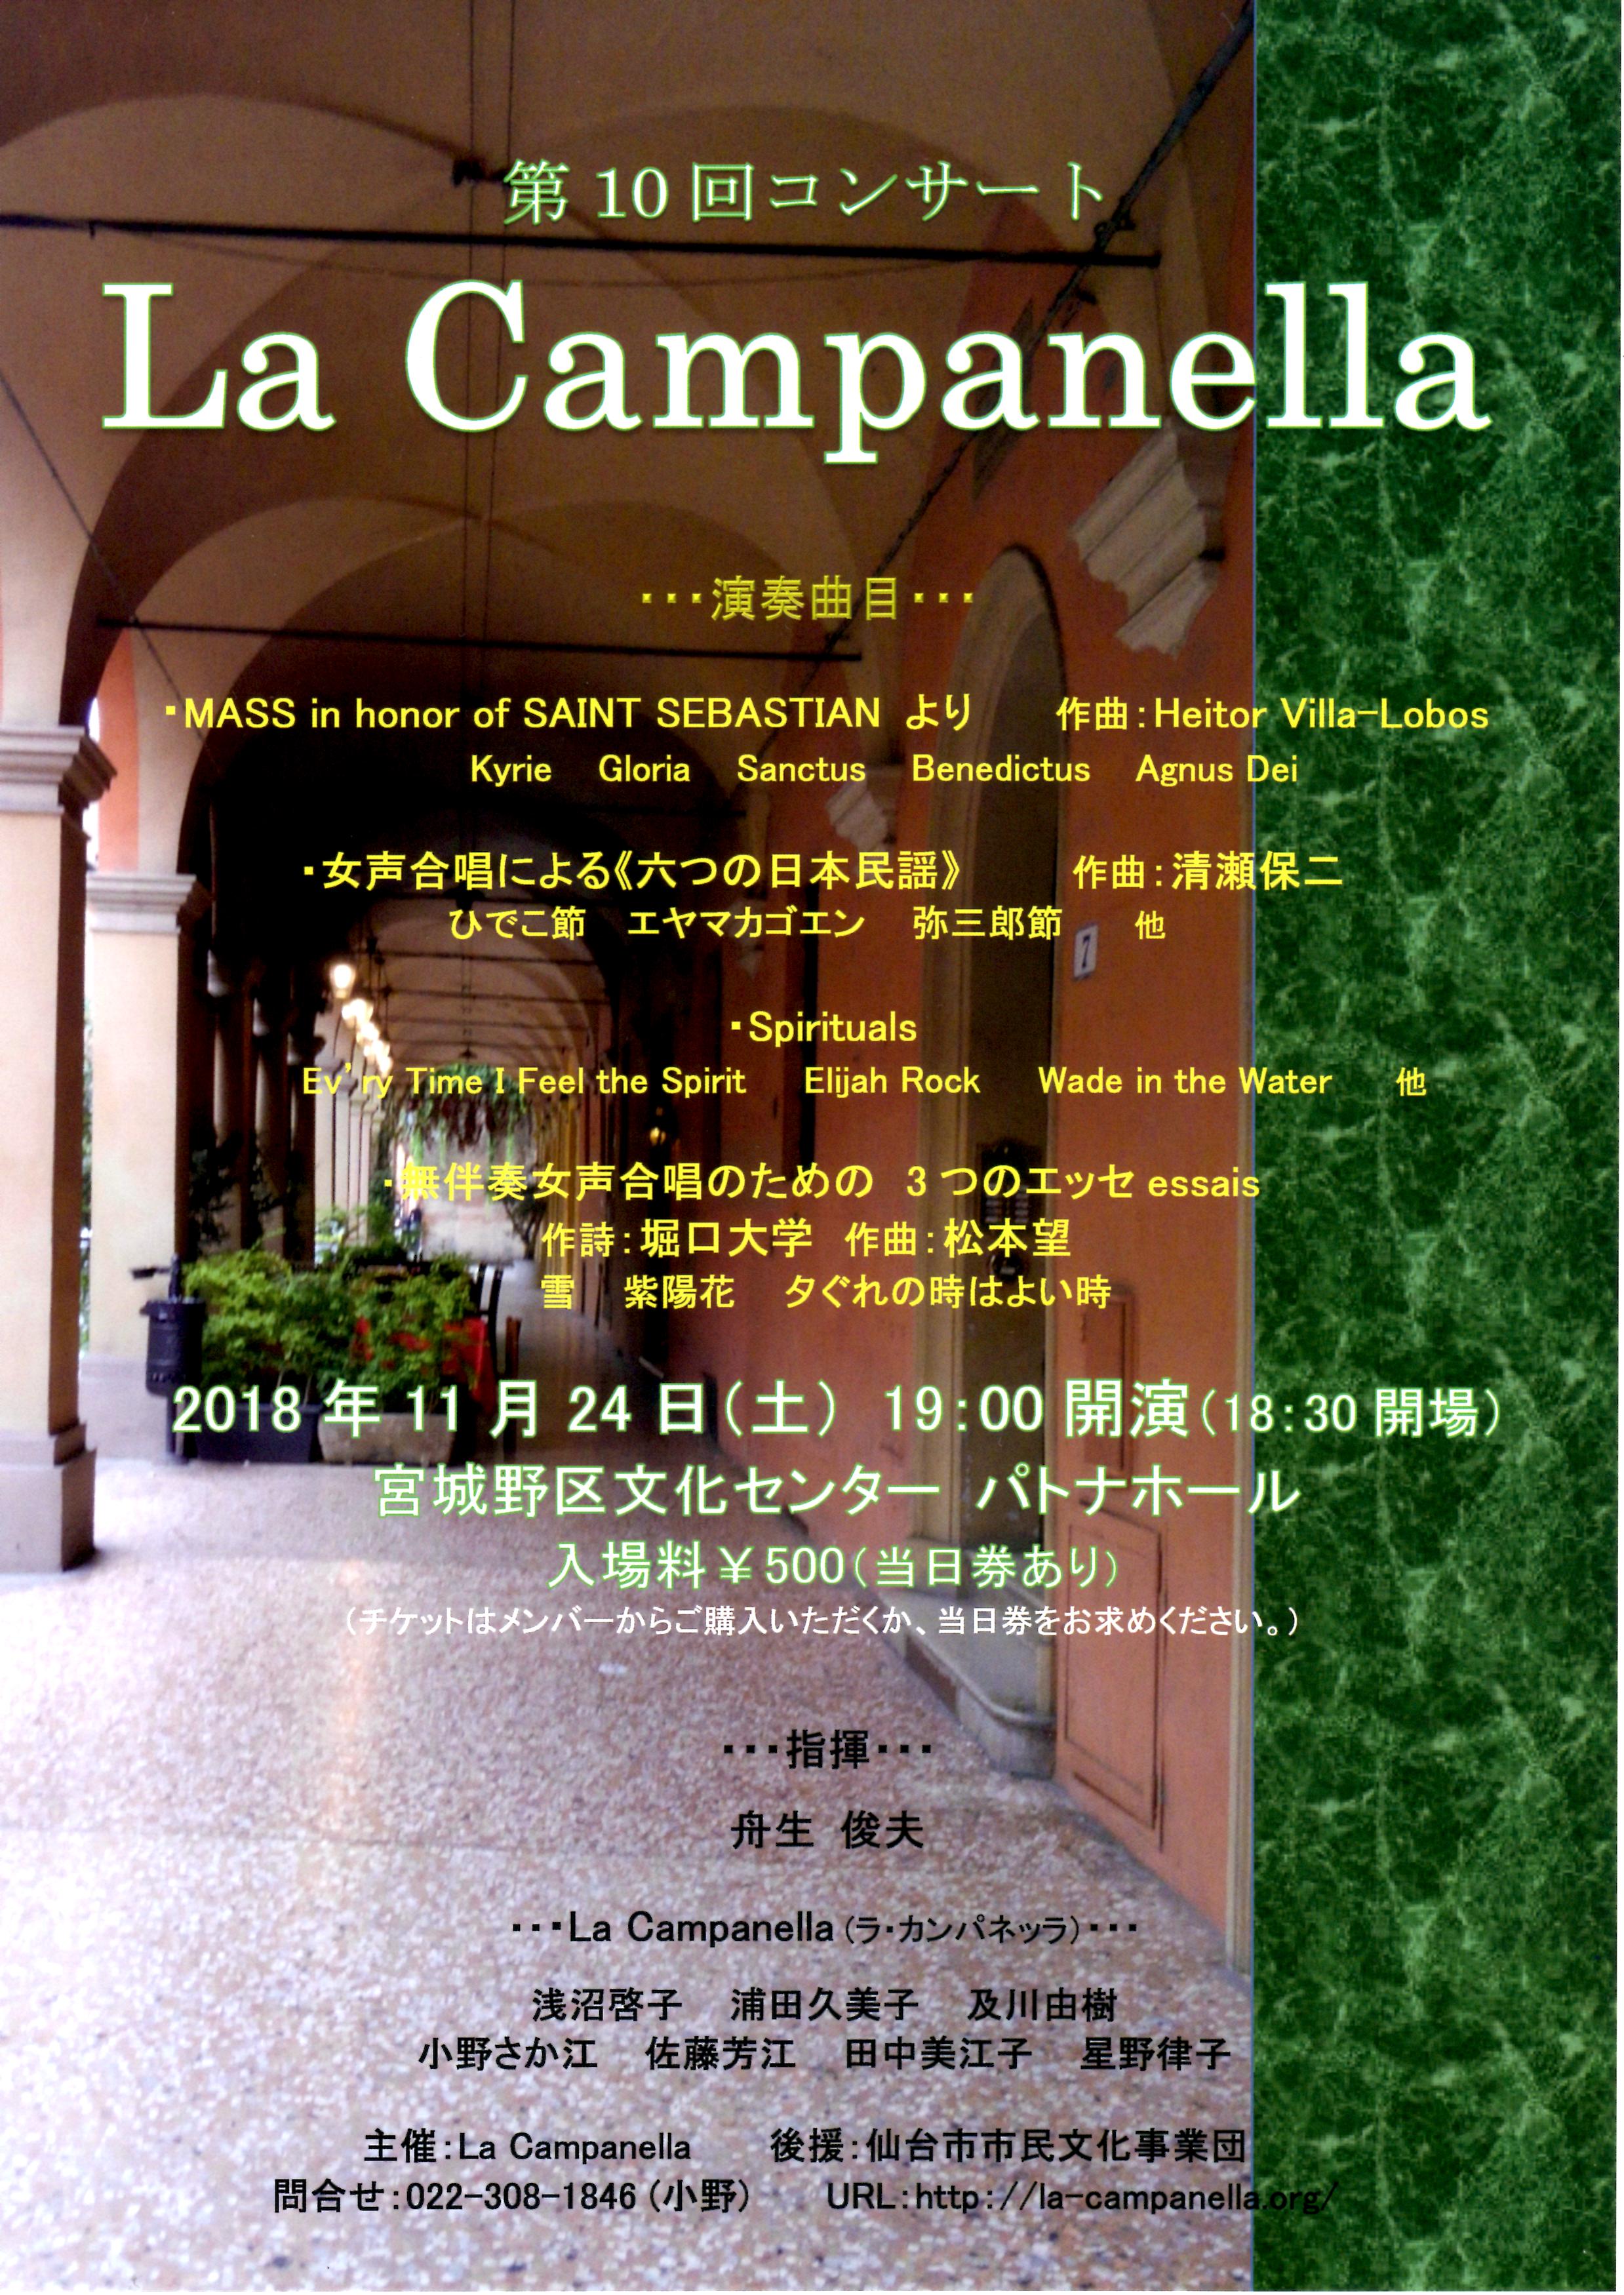 コンサート情報 » La Campanella